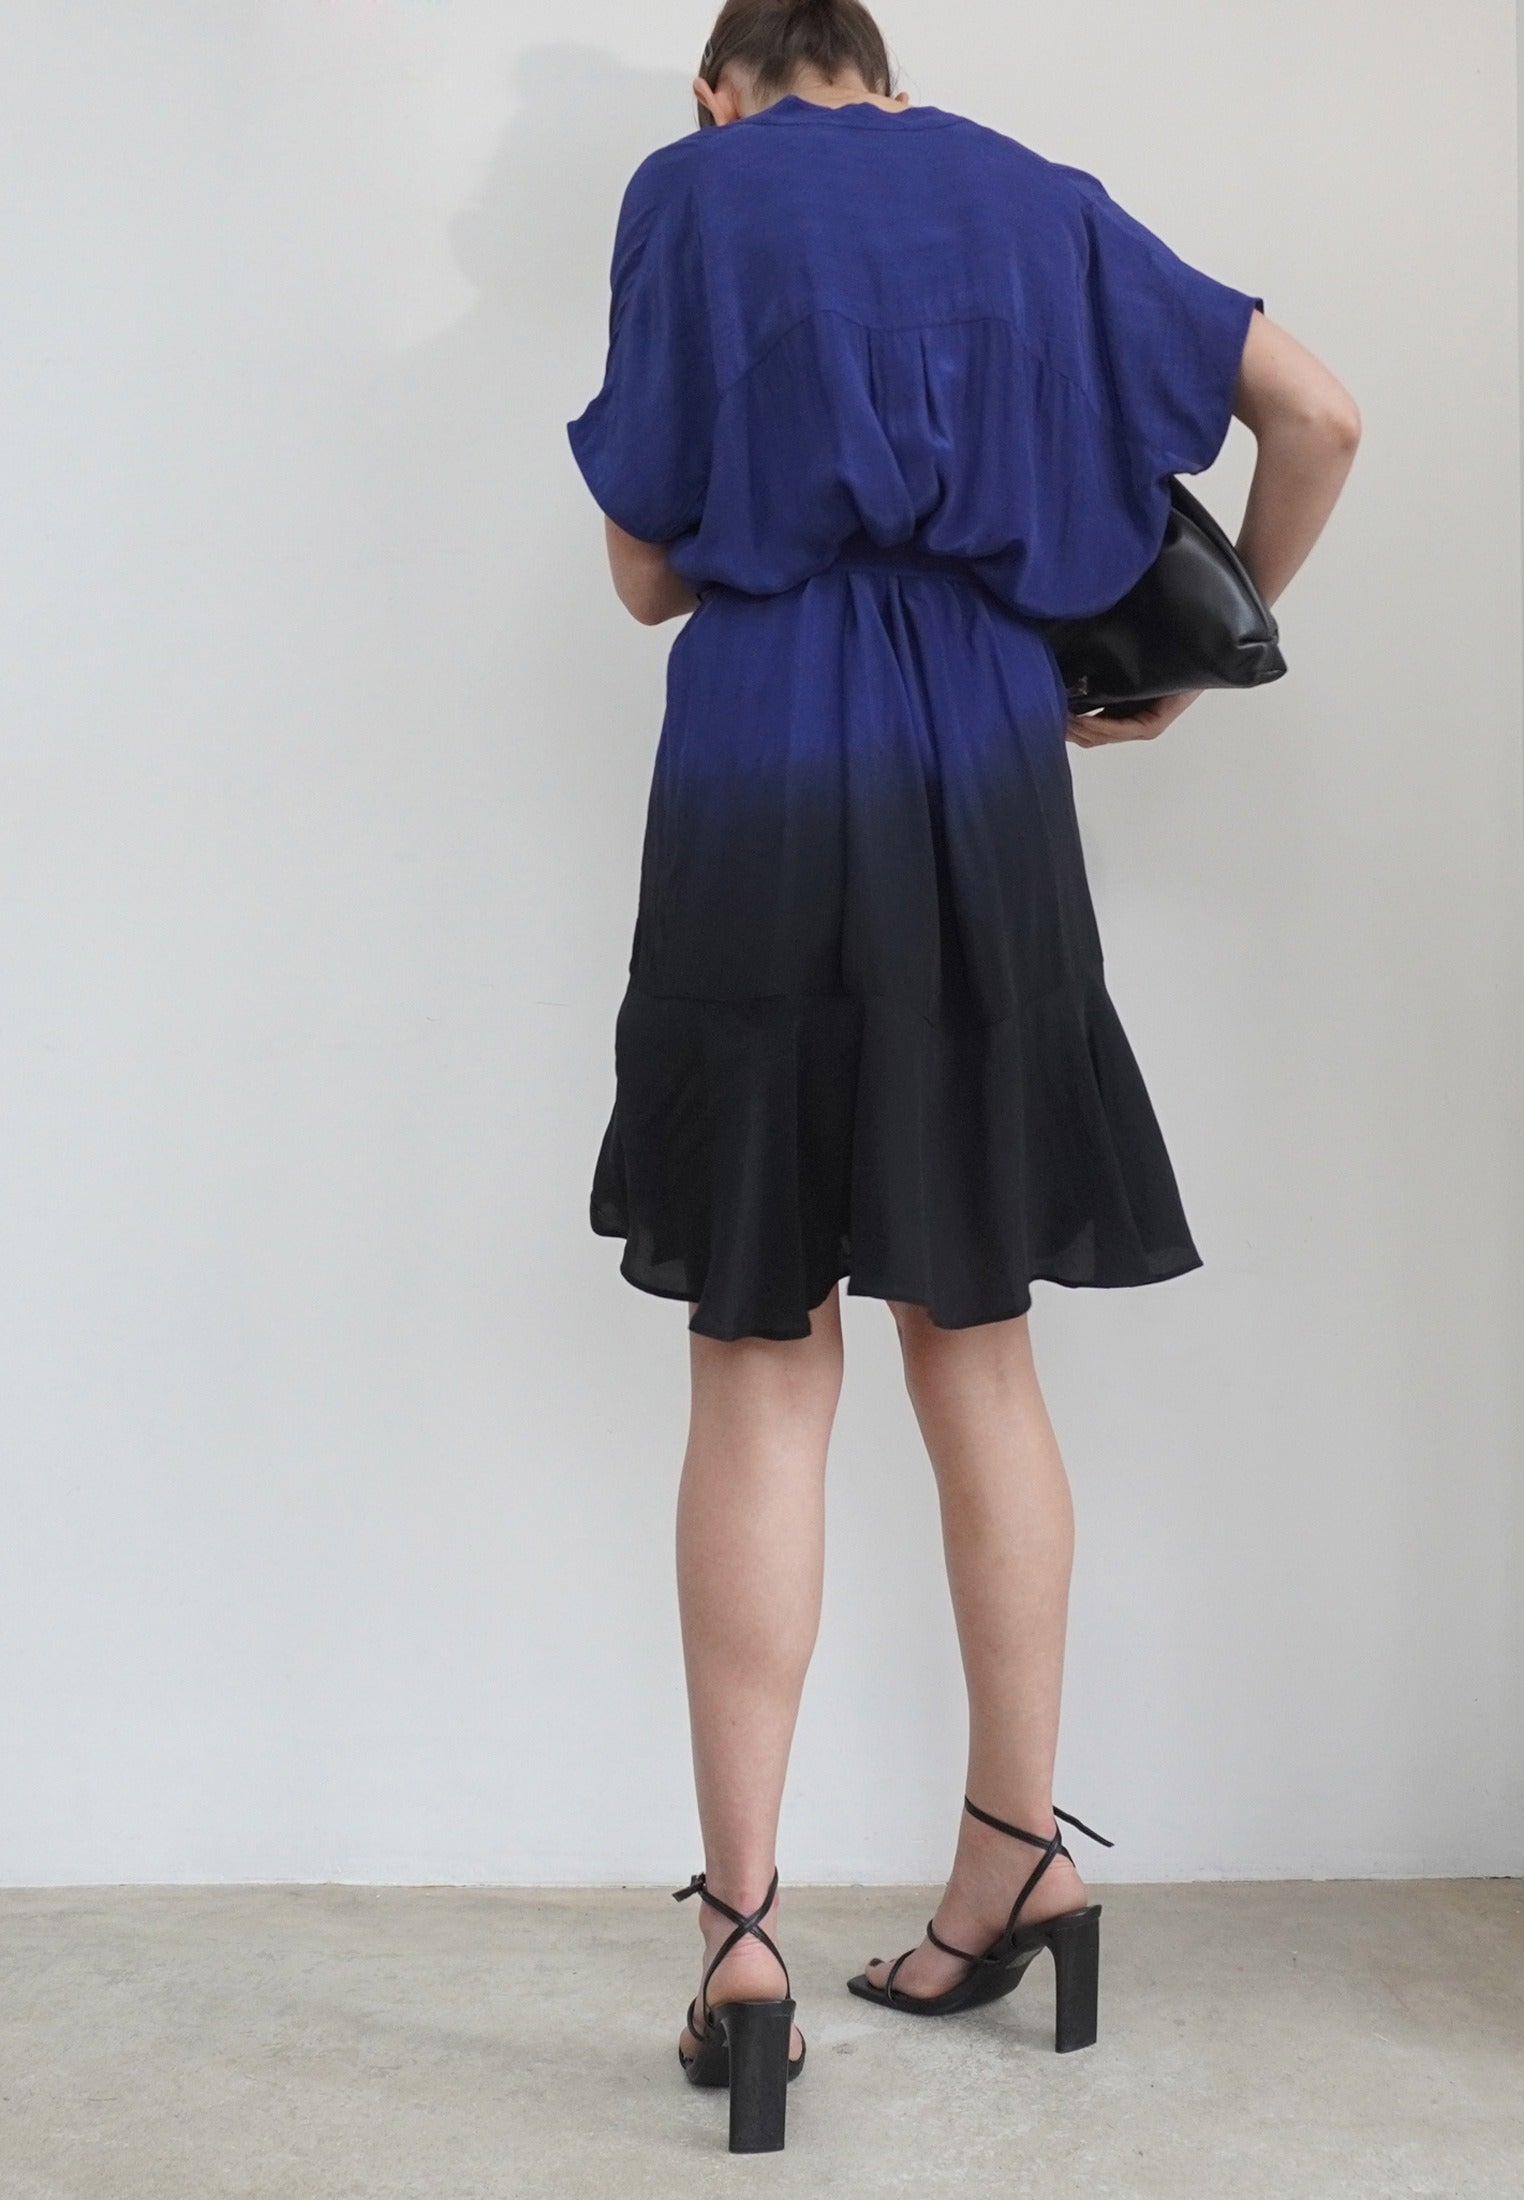 VALETTA DRESS BLUE & BLACK